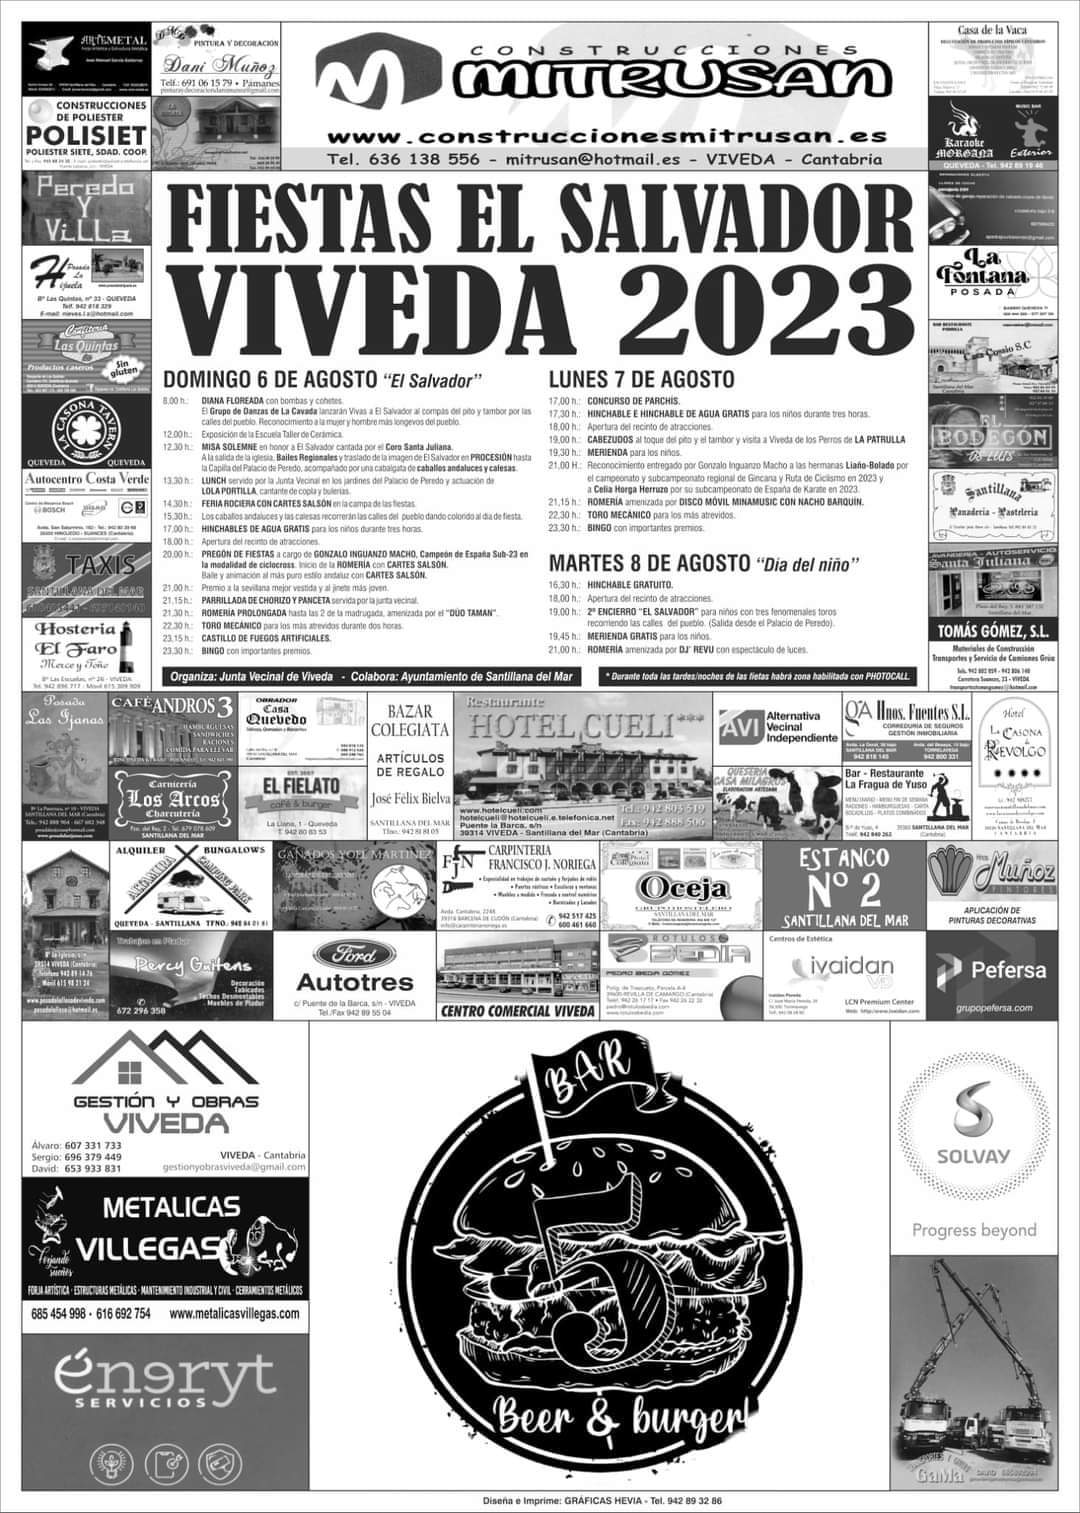 Fiestas El Salvador Viveda 2023